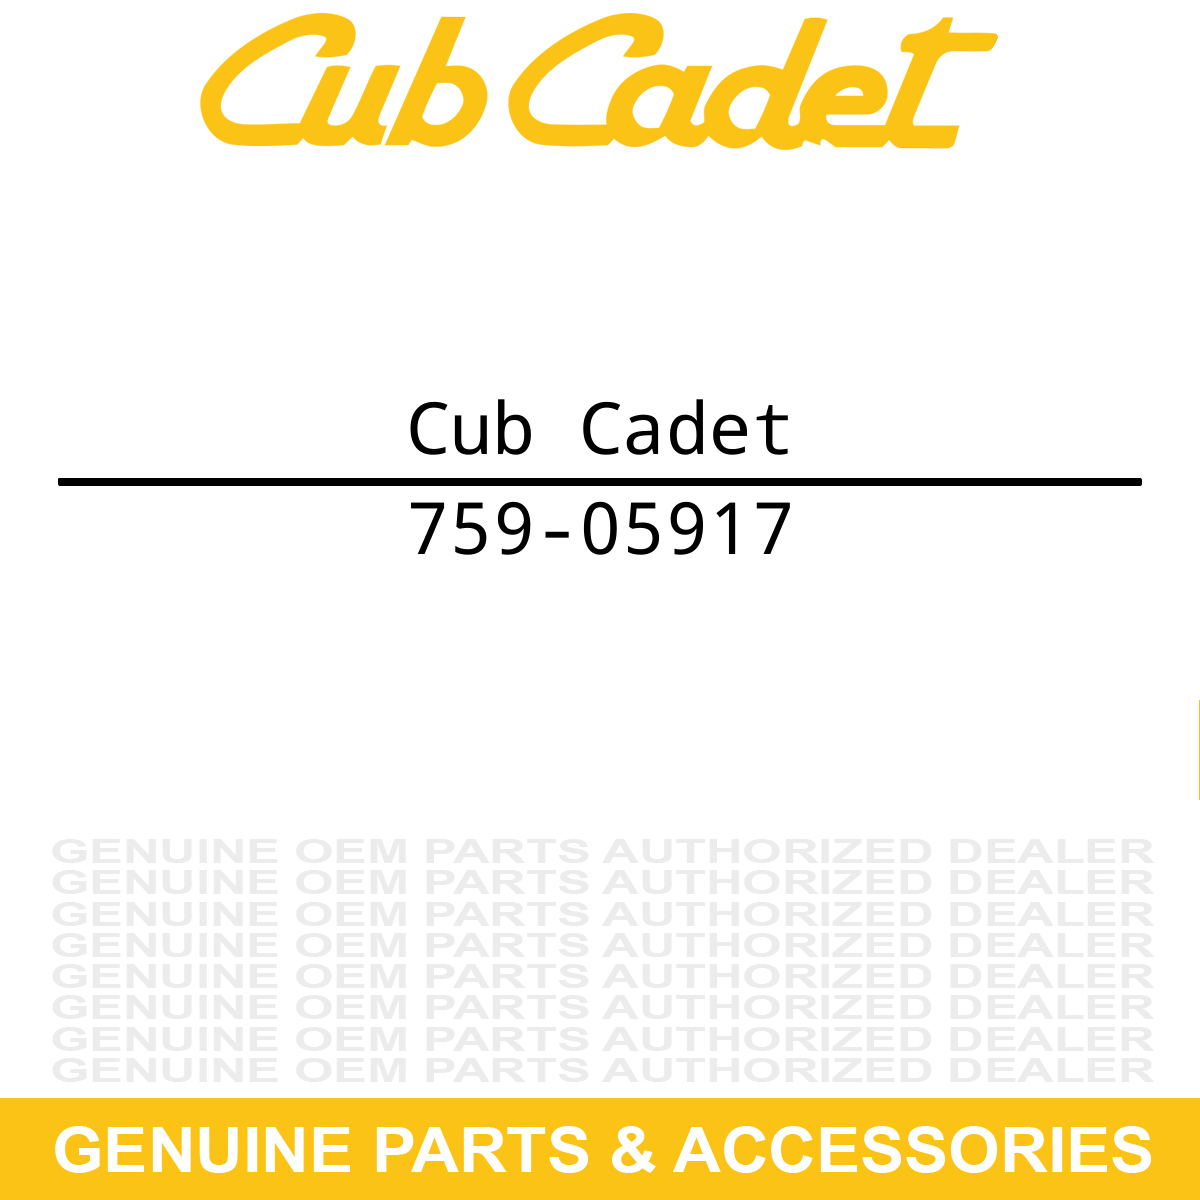 CUB CADET 759-05917